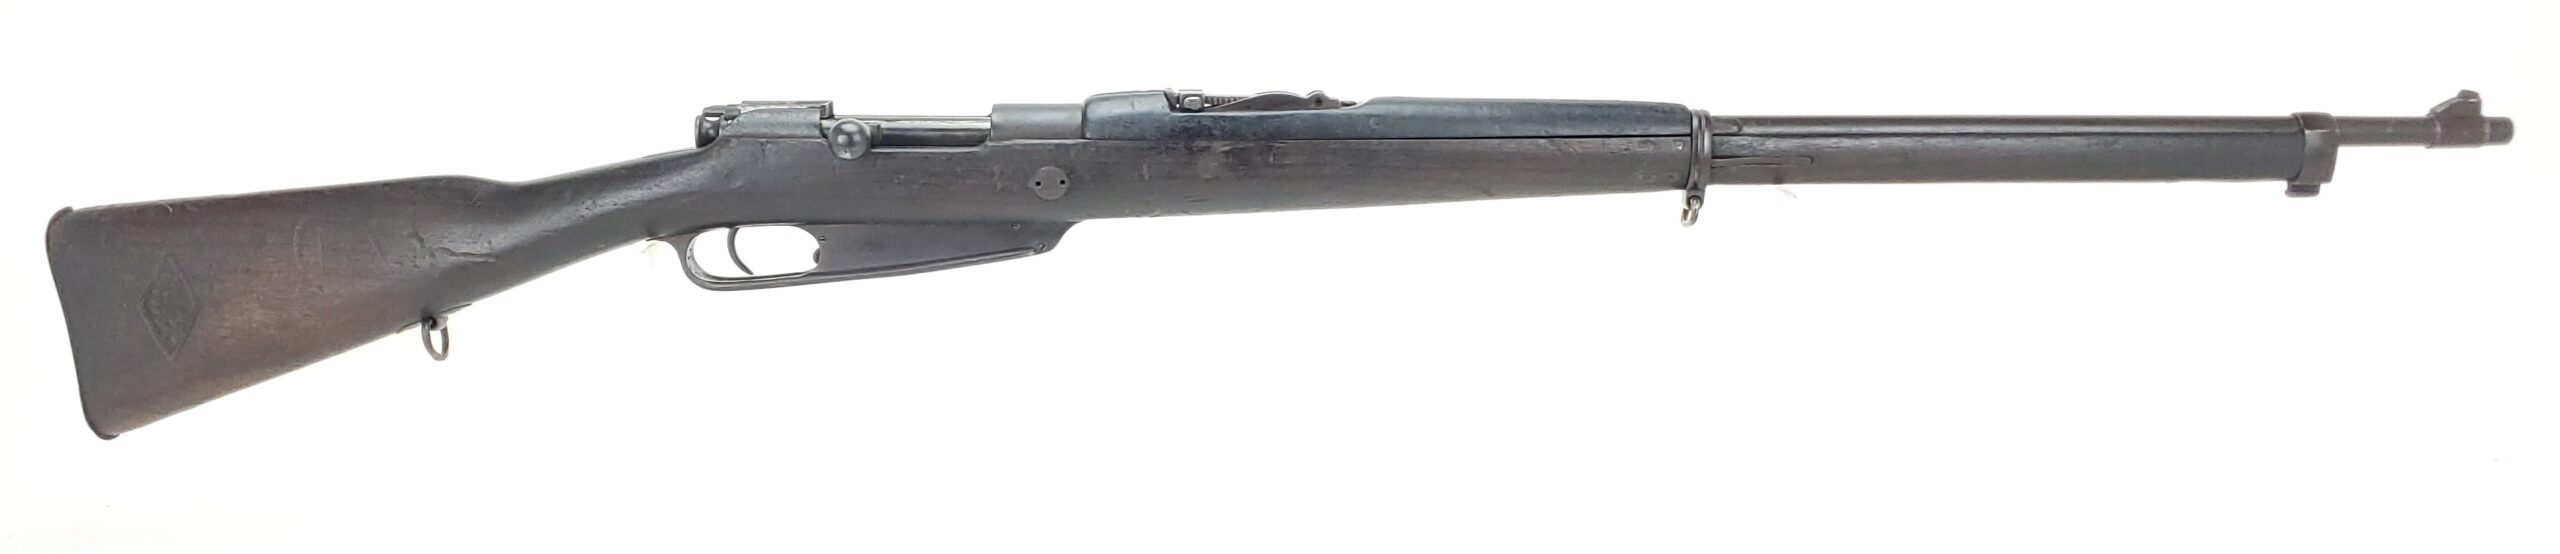 British No4 Mk1 Enfield Rifle Excellent Fazakerley Arsenal 1948